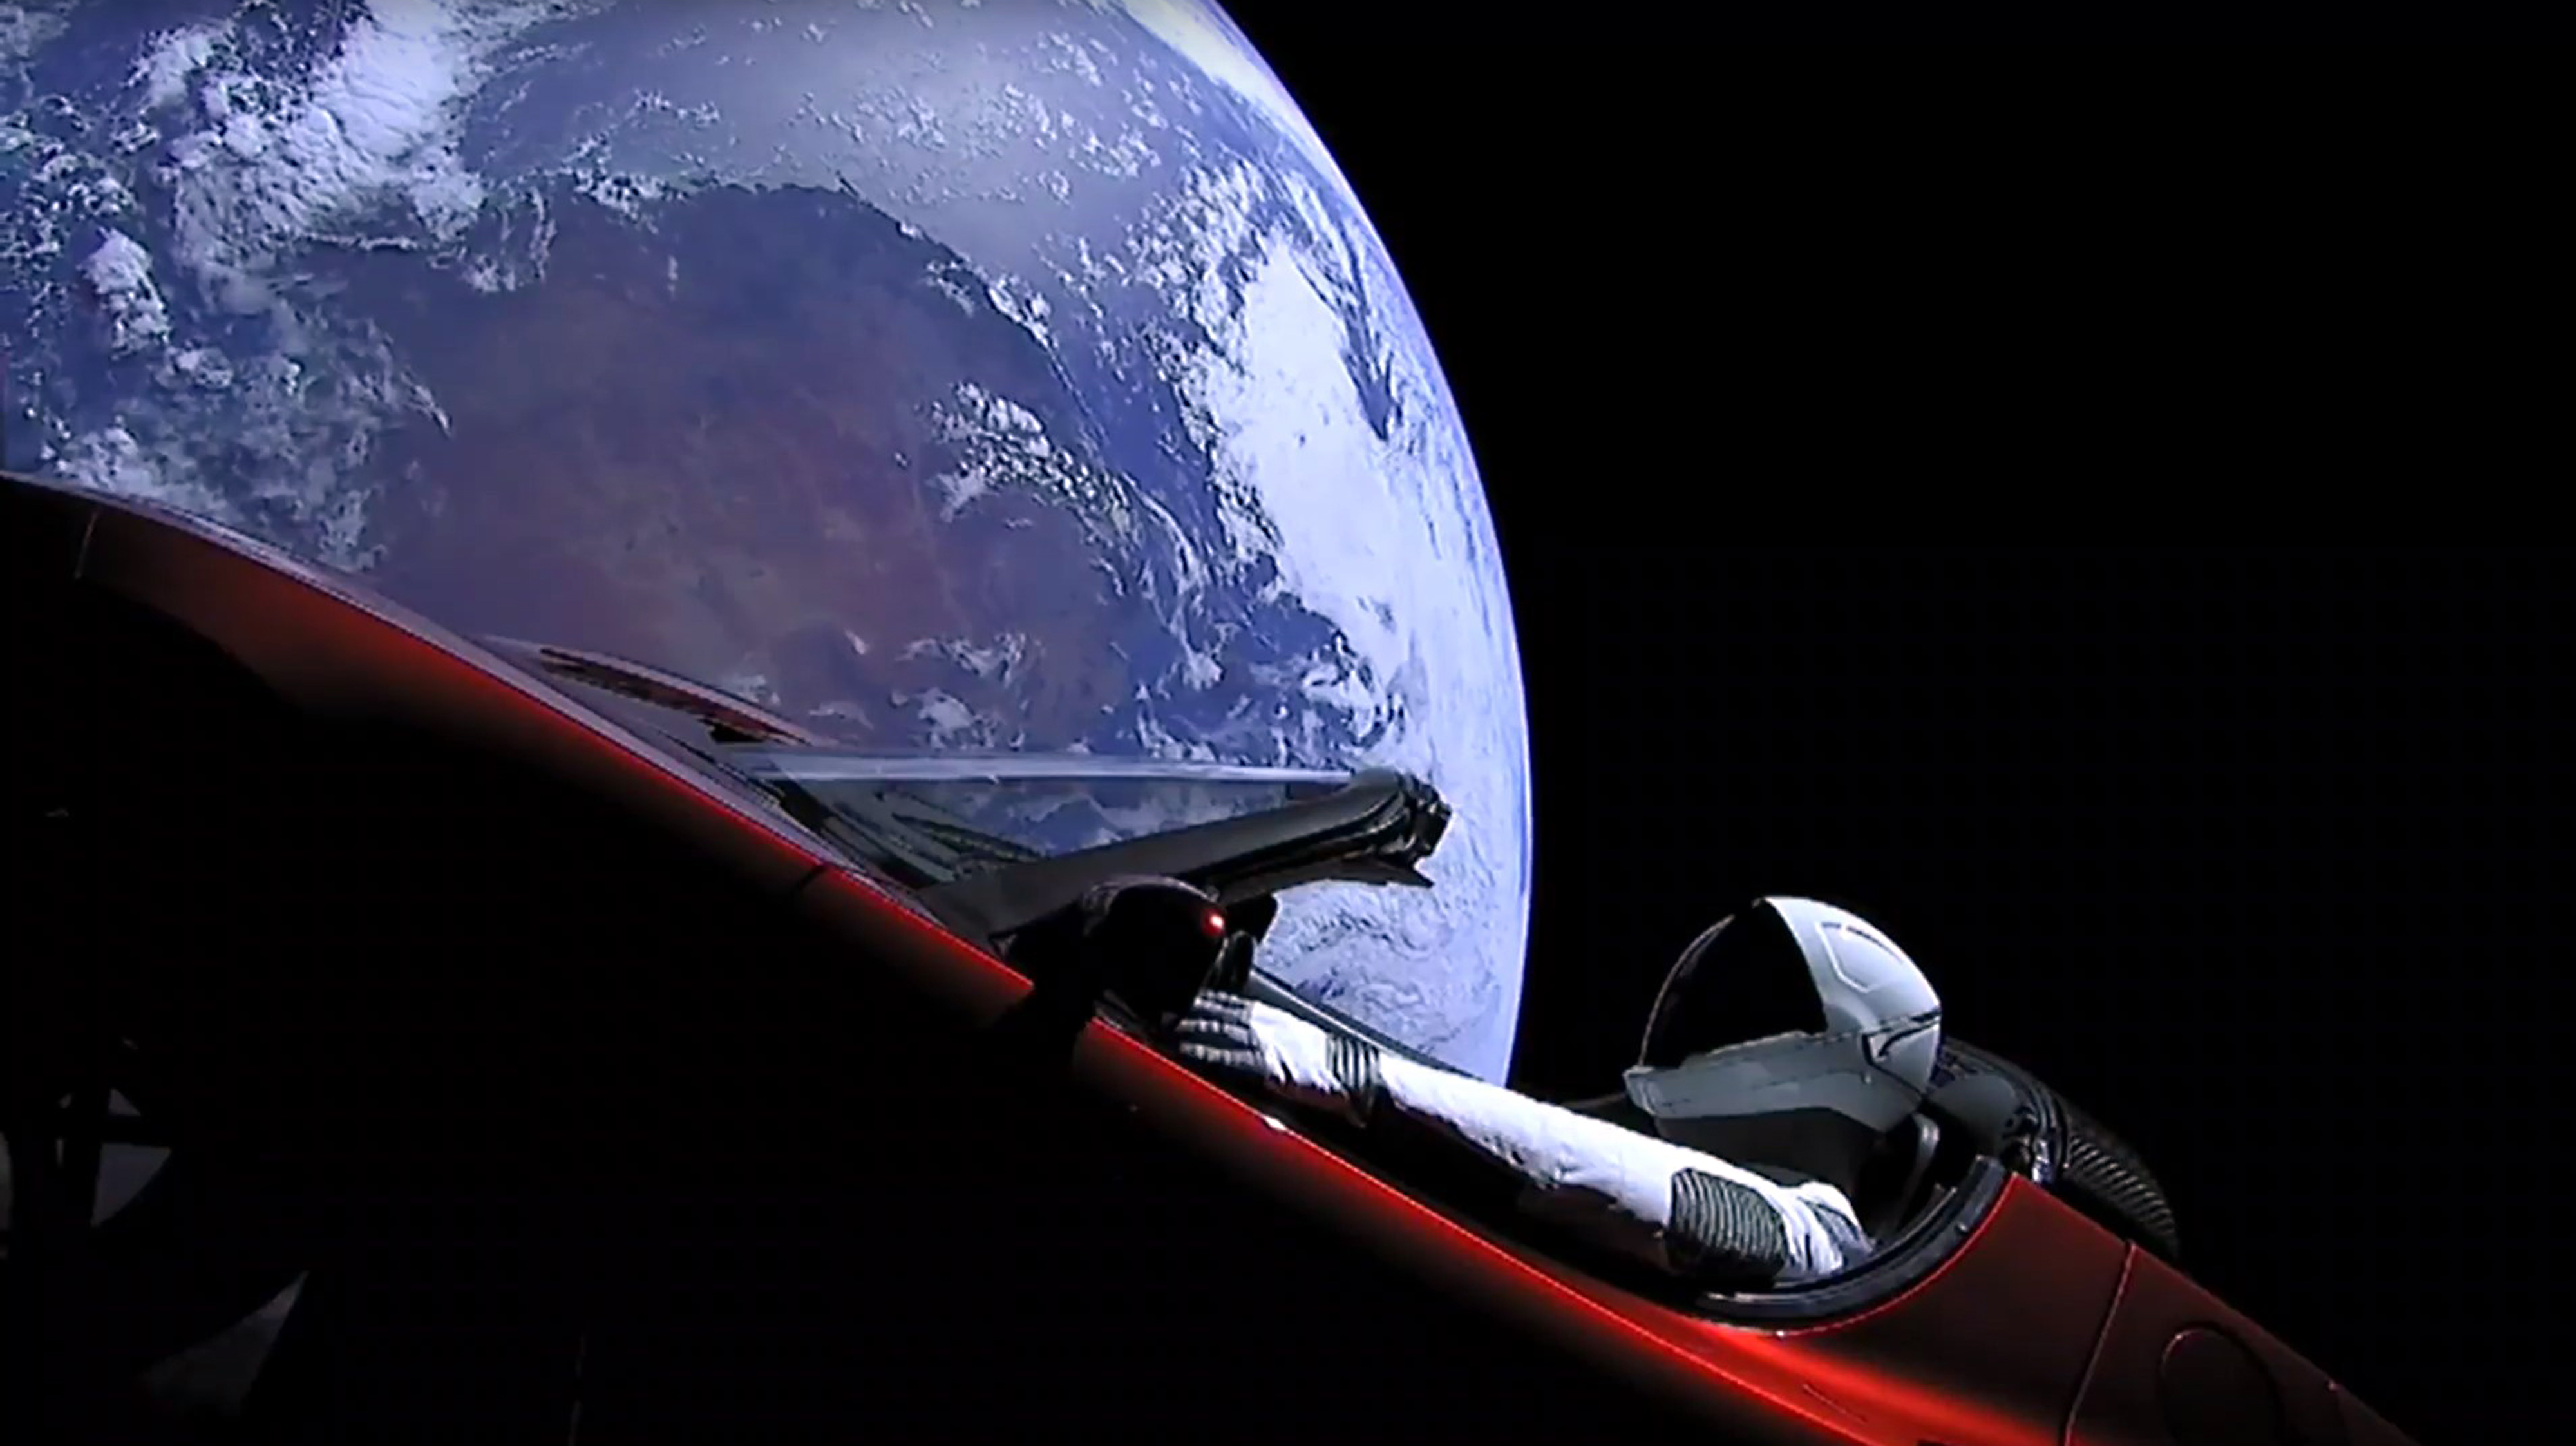 Előbb egy 500 dolláros márkás lángszóró, aztán egy Tesla az űrben – mit eszik a világ Elon Muskon?